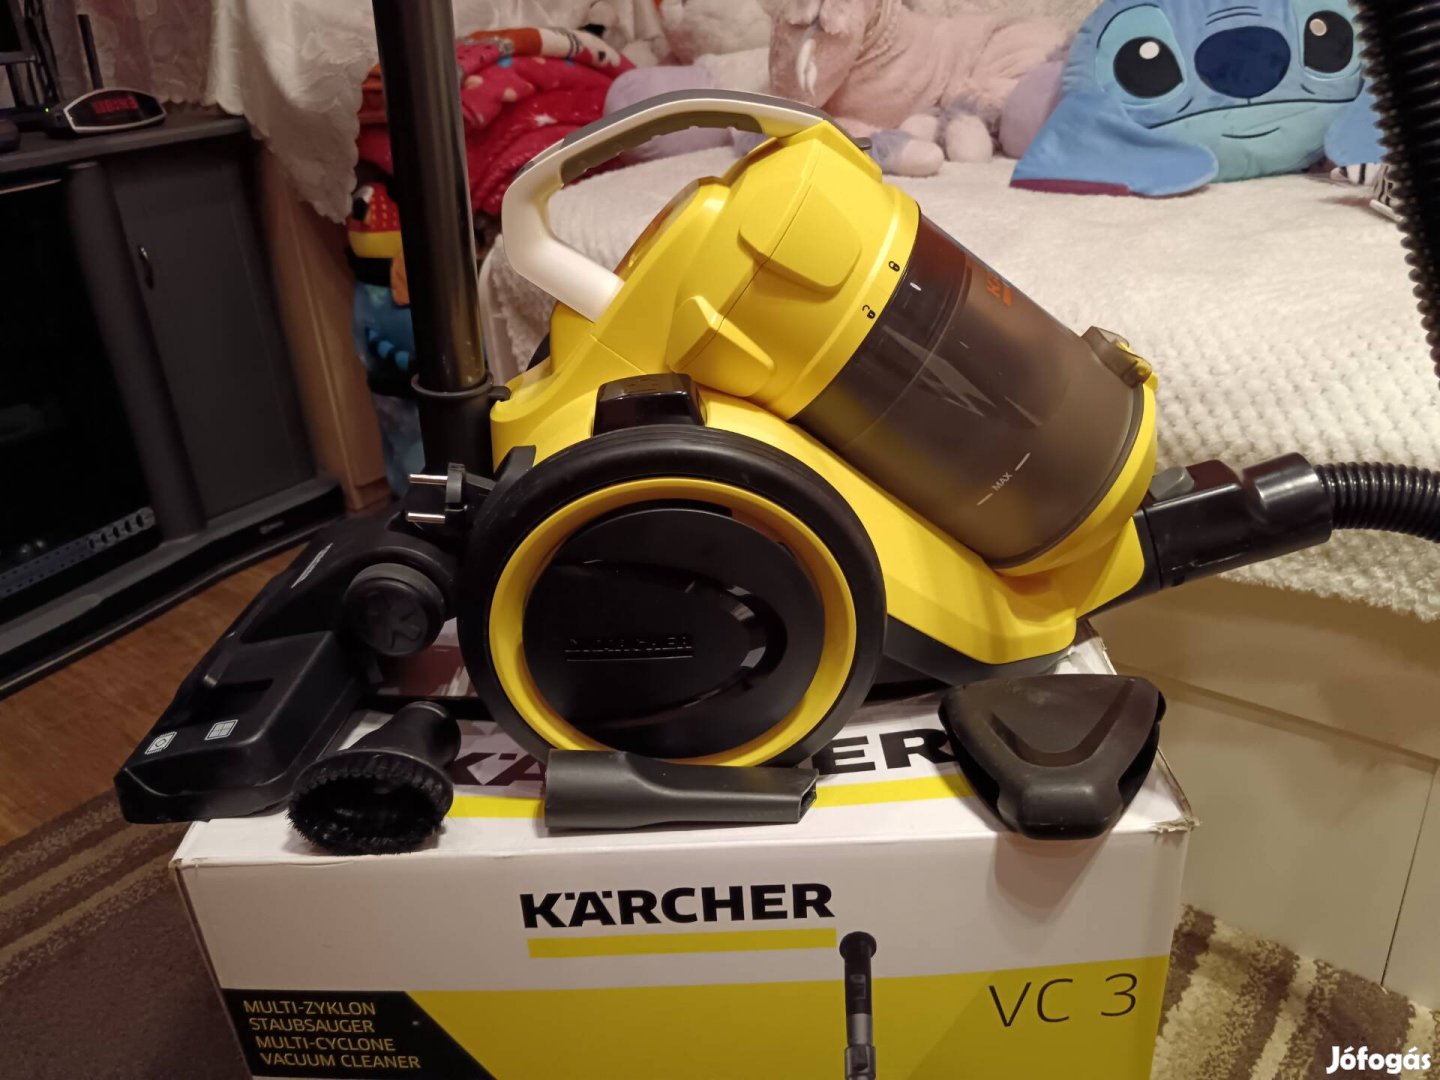 Karcher VC3 multiciklonos porszívó, újszerű állapotban 